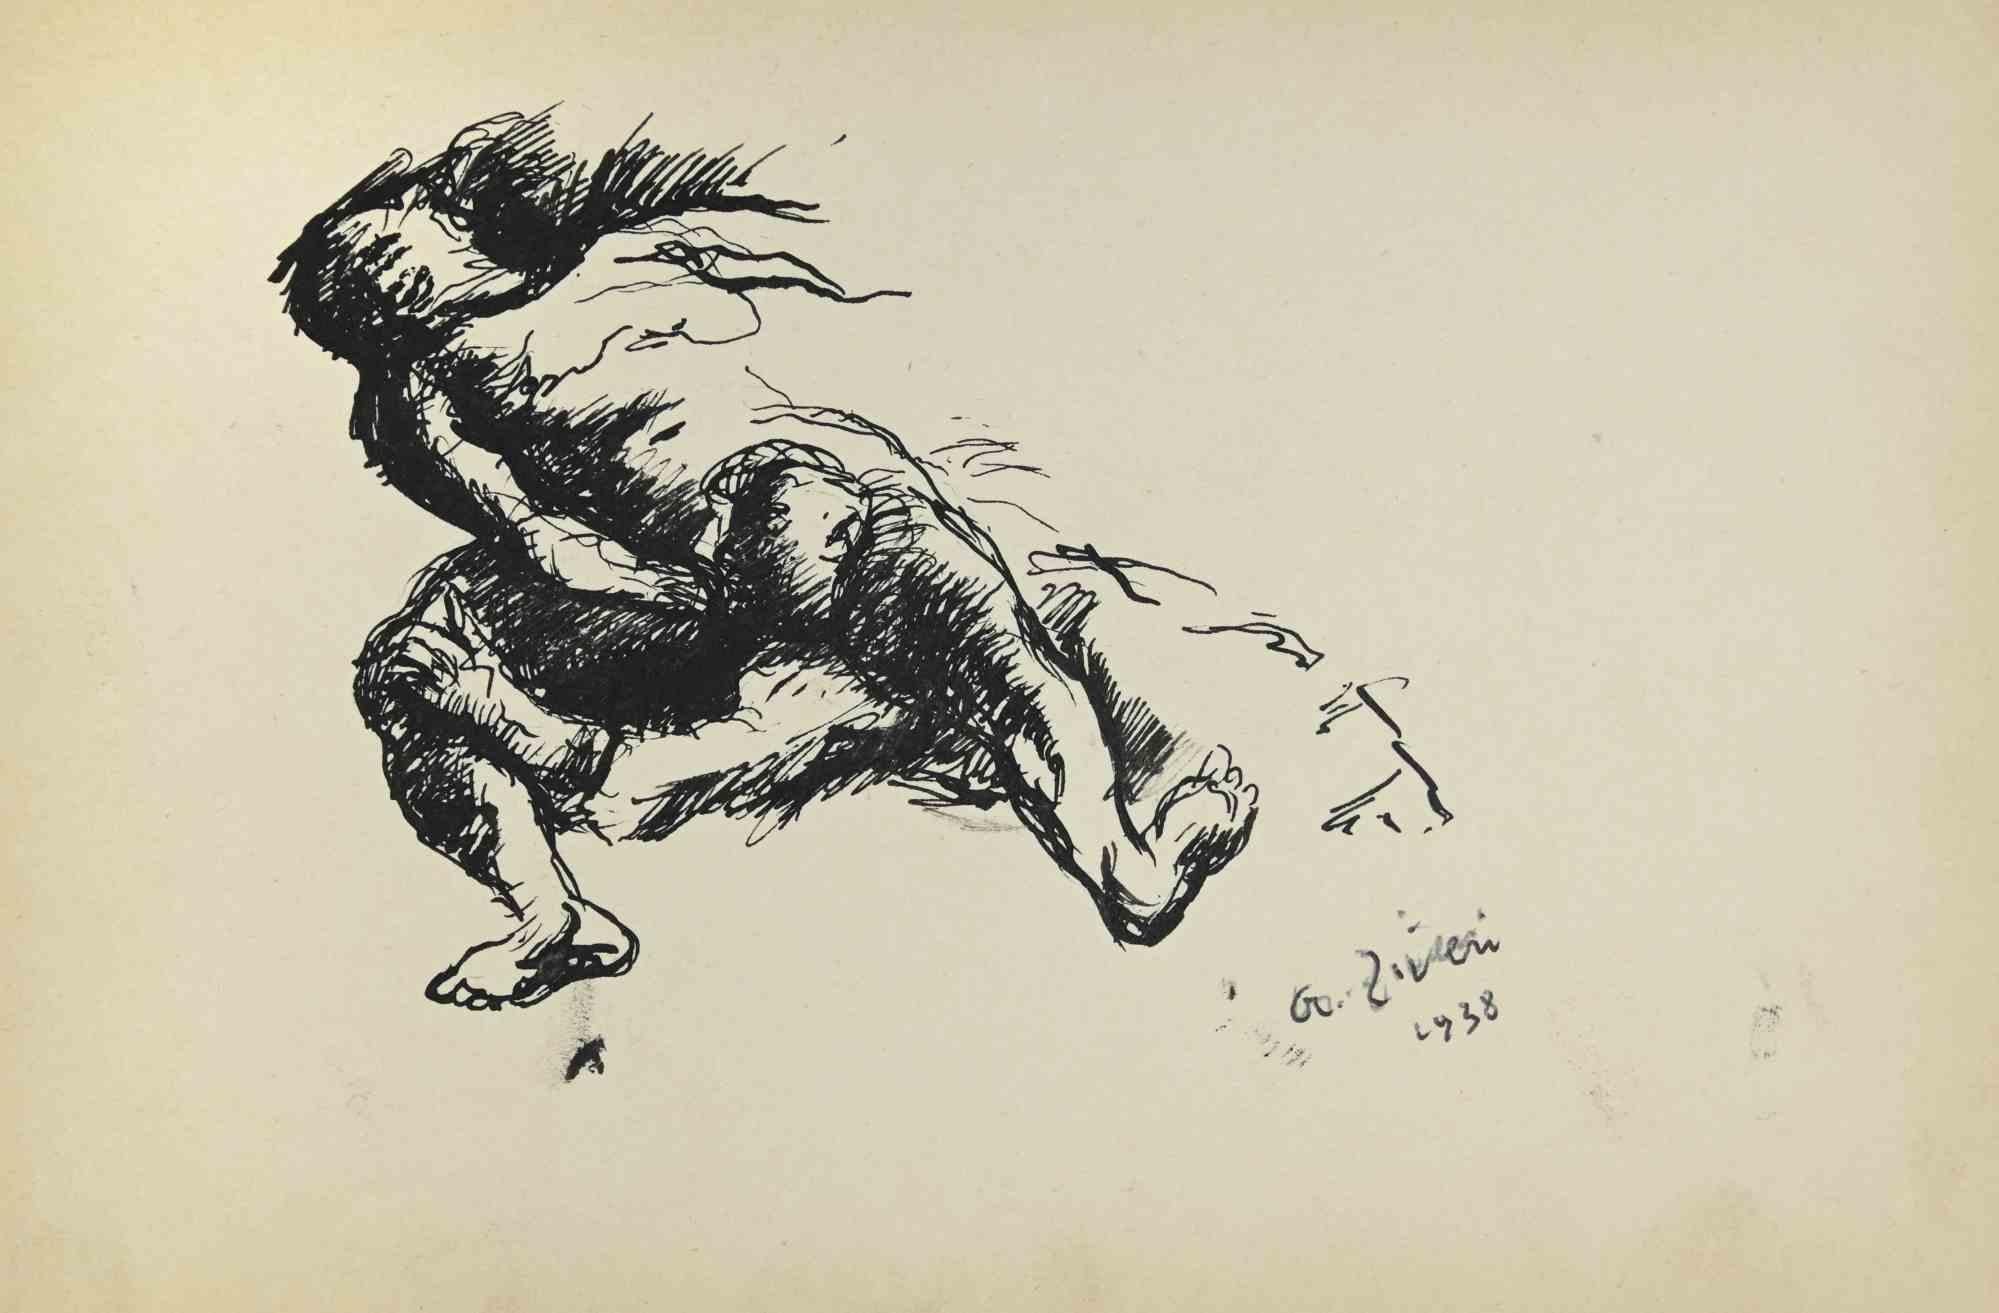 Erotic Scene ist eine Zeichnung von Alberto Ziveri aus dem Jahr 1938.

Tinte auf Papier.

Handsigniert und datiert.

In gutem Zustand mit leichten Stockflecken.

Das Kunstwerk wird durch geschickte Striche meisterhaft dargestellt.

Alberto Ziveri